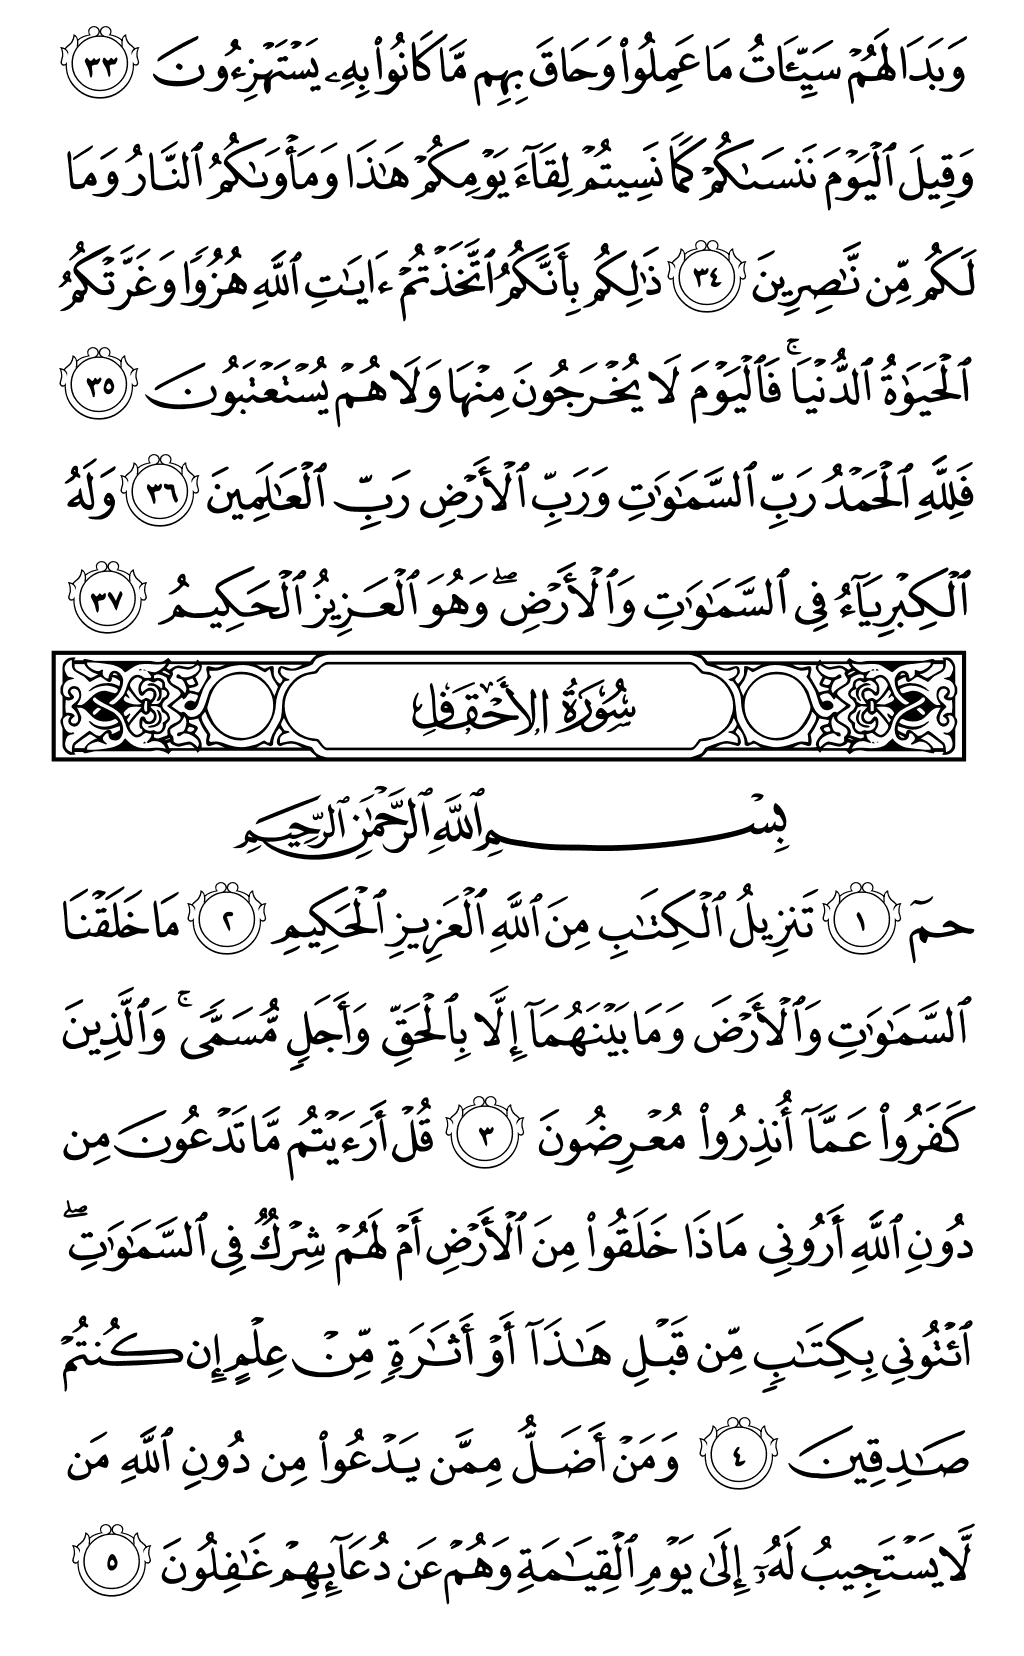 الصفحة رقم 502 من القرآن الكريم